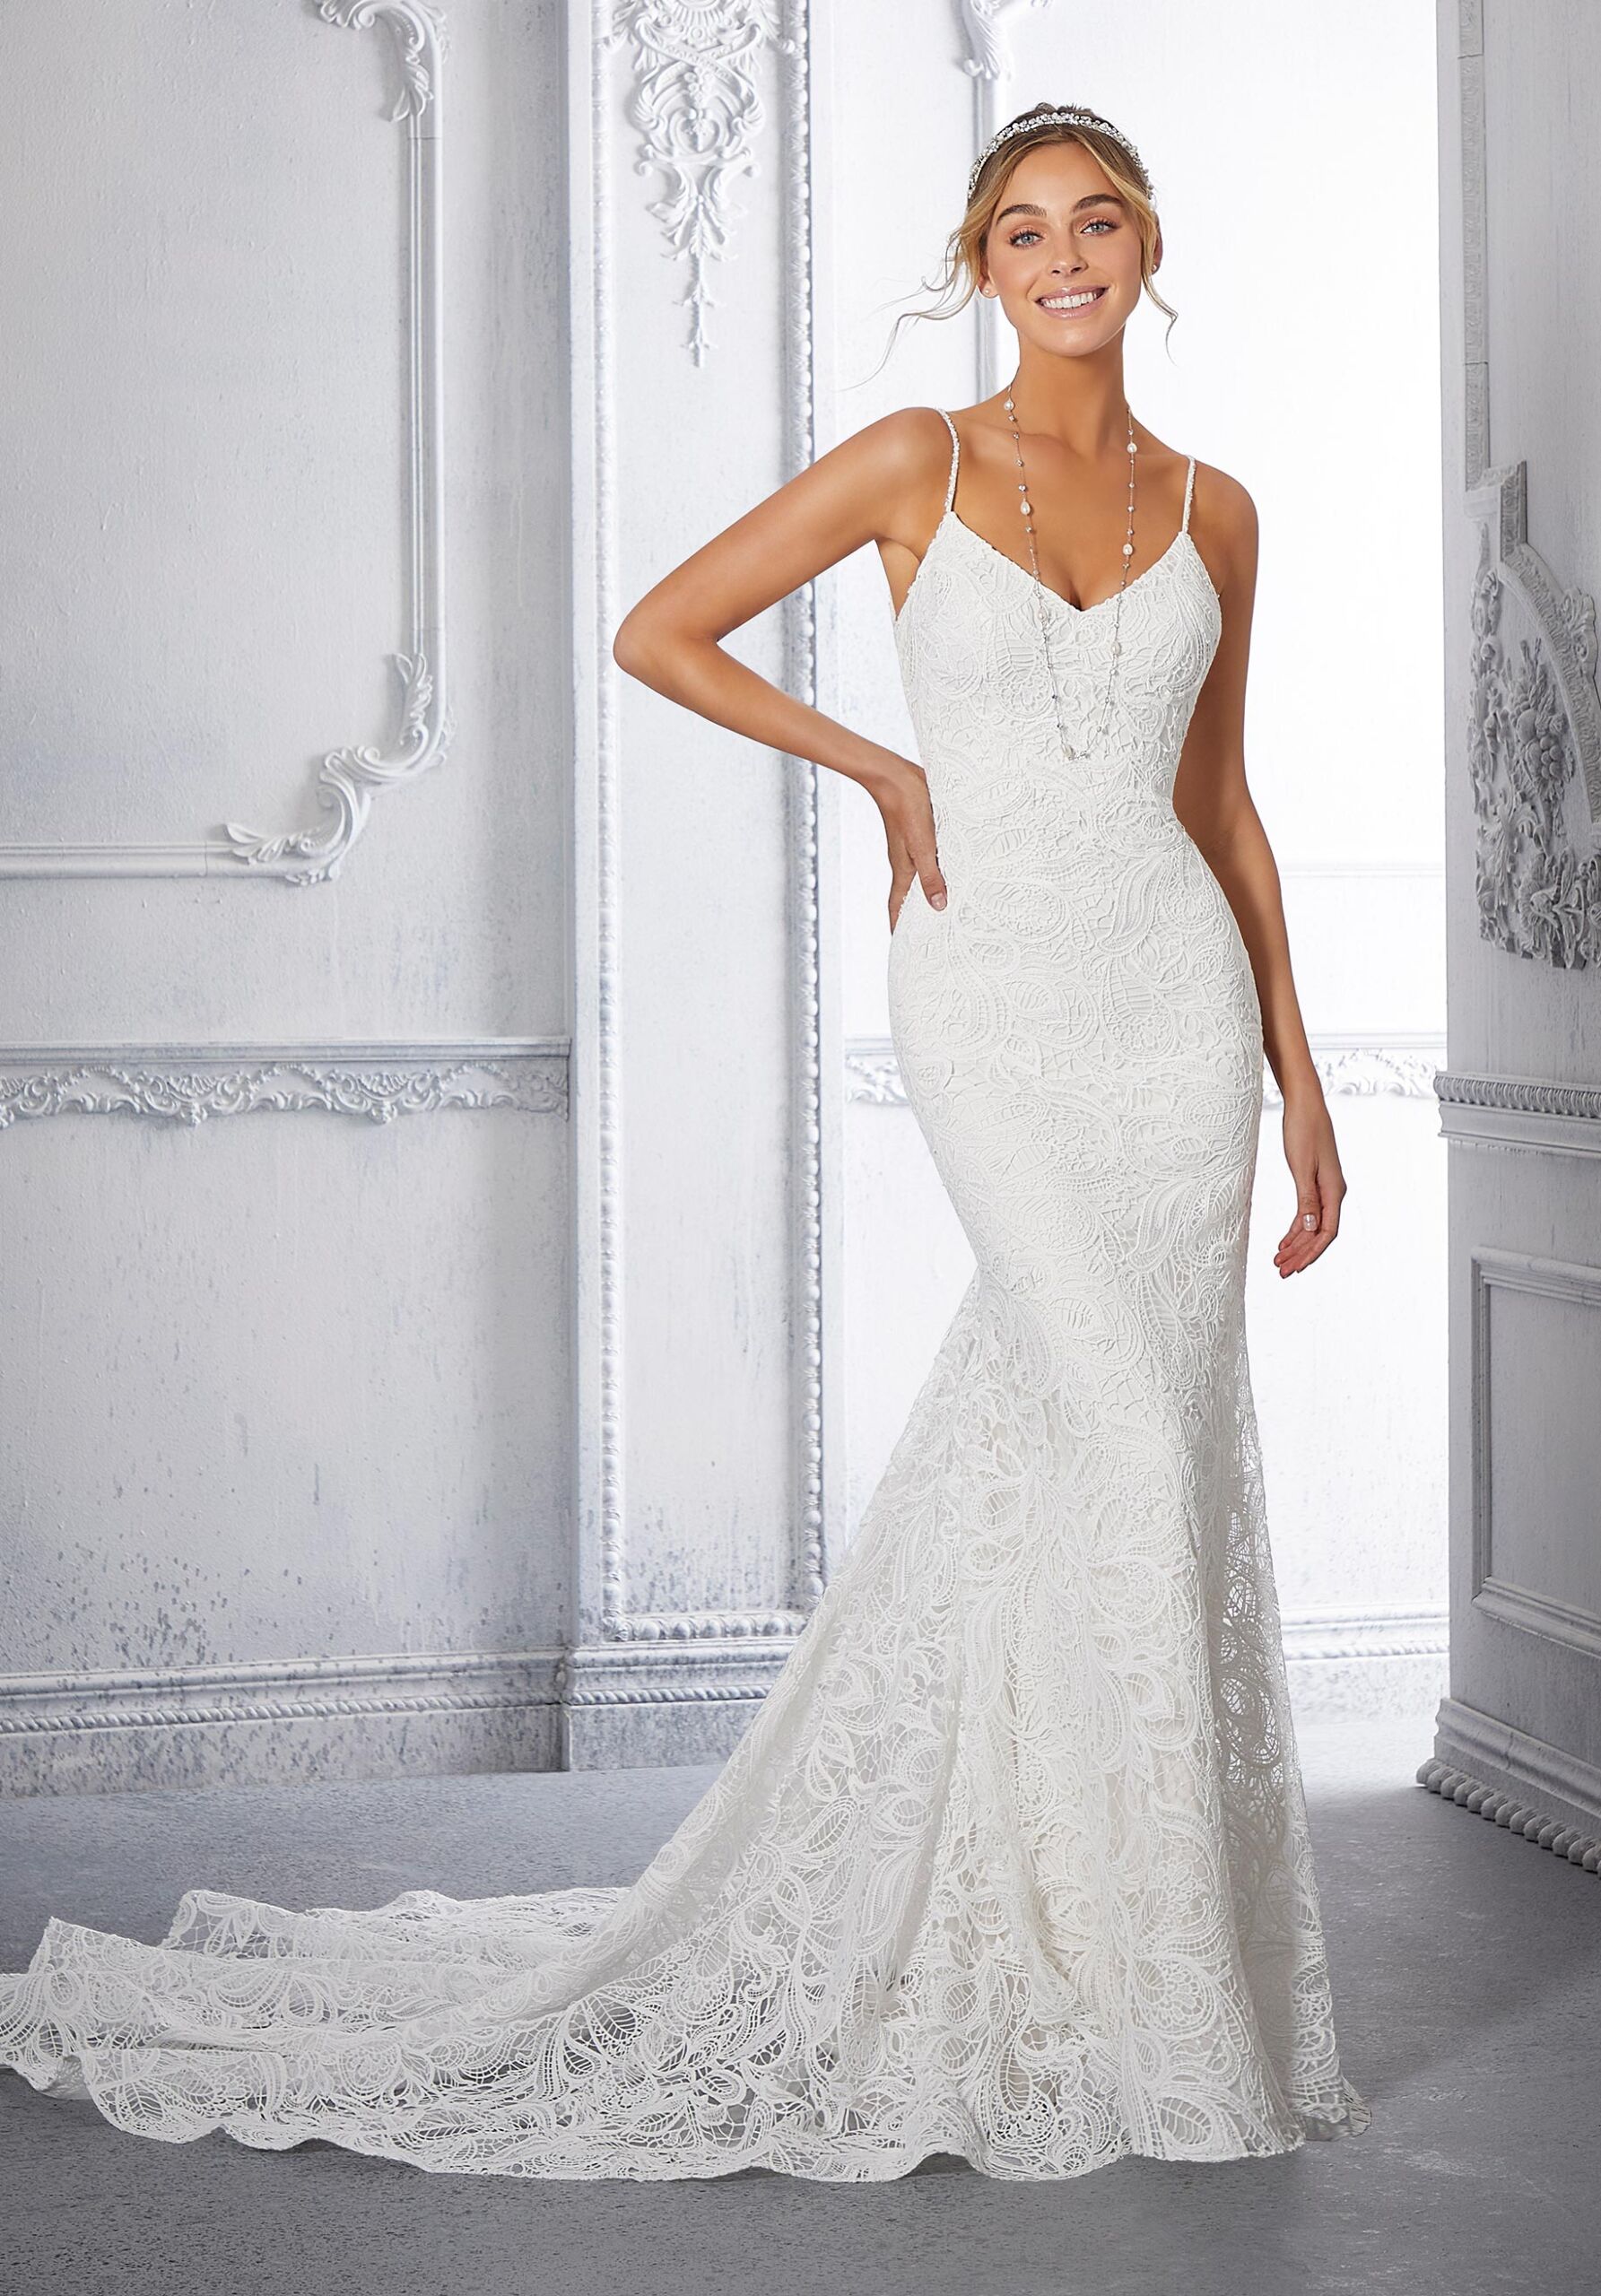 7 SUPER HOT Morilee Gowns for 2021/2022 Brides. Desktop Image